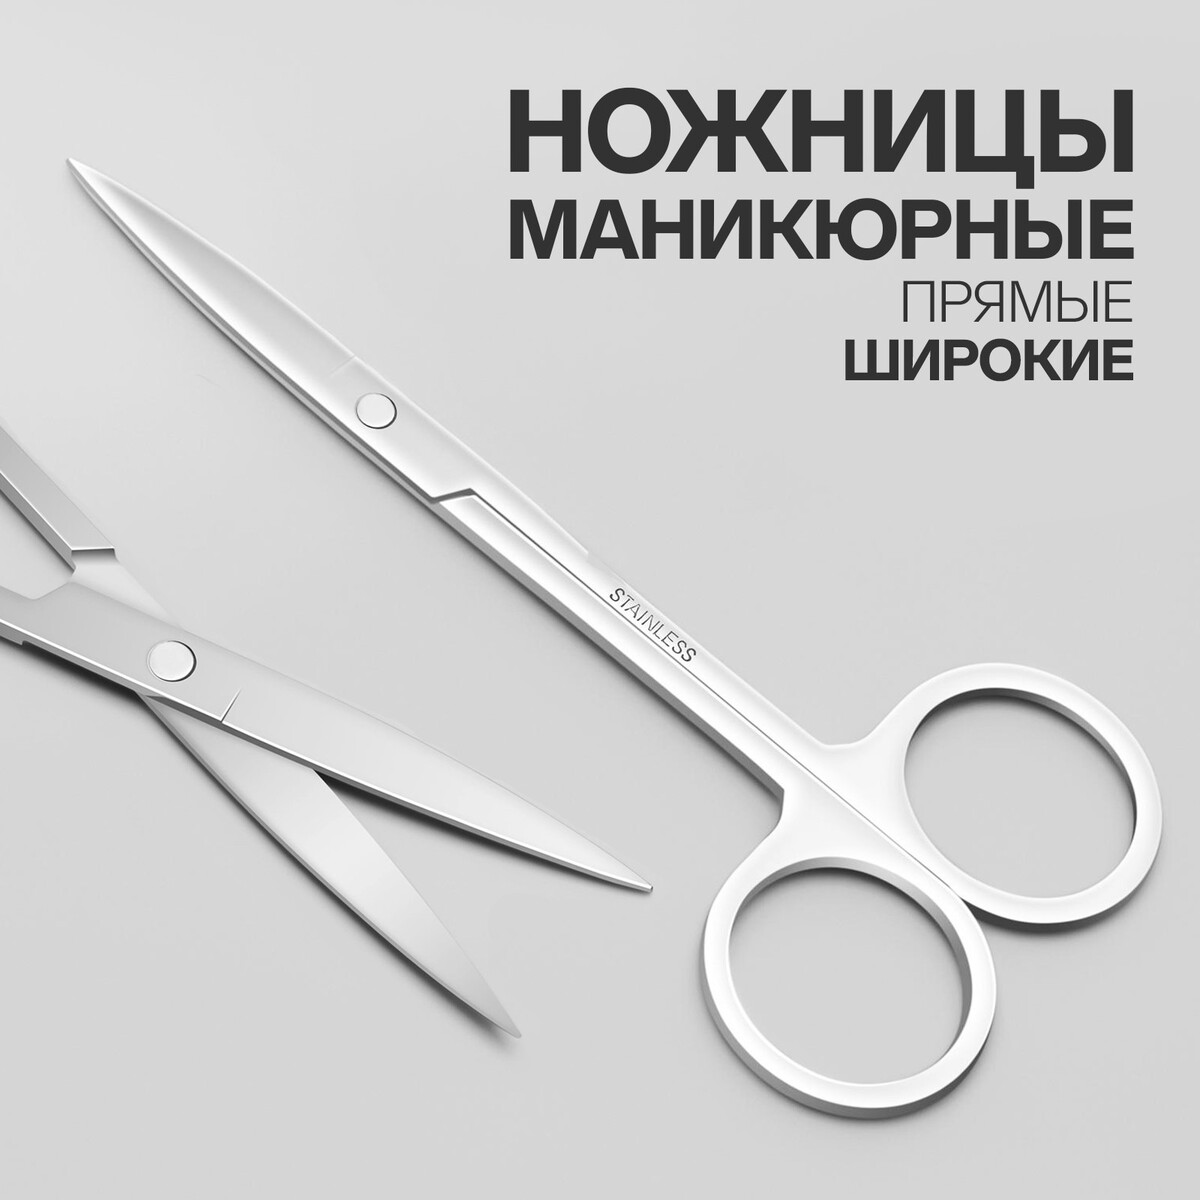 Ножницы маникюрные, прямые, широкие, 12 см, цвет серебристый ножницы маникюрные широкие загнутые 9 см